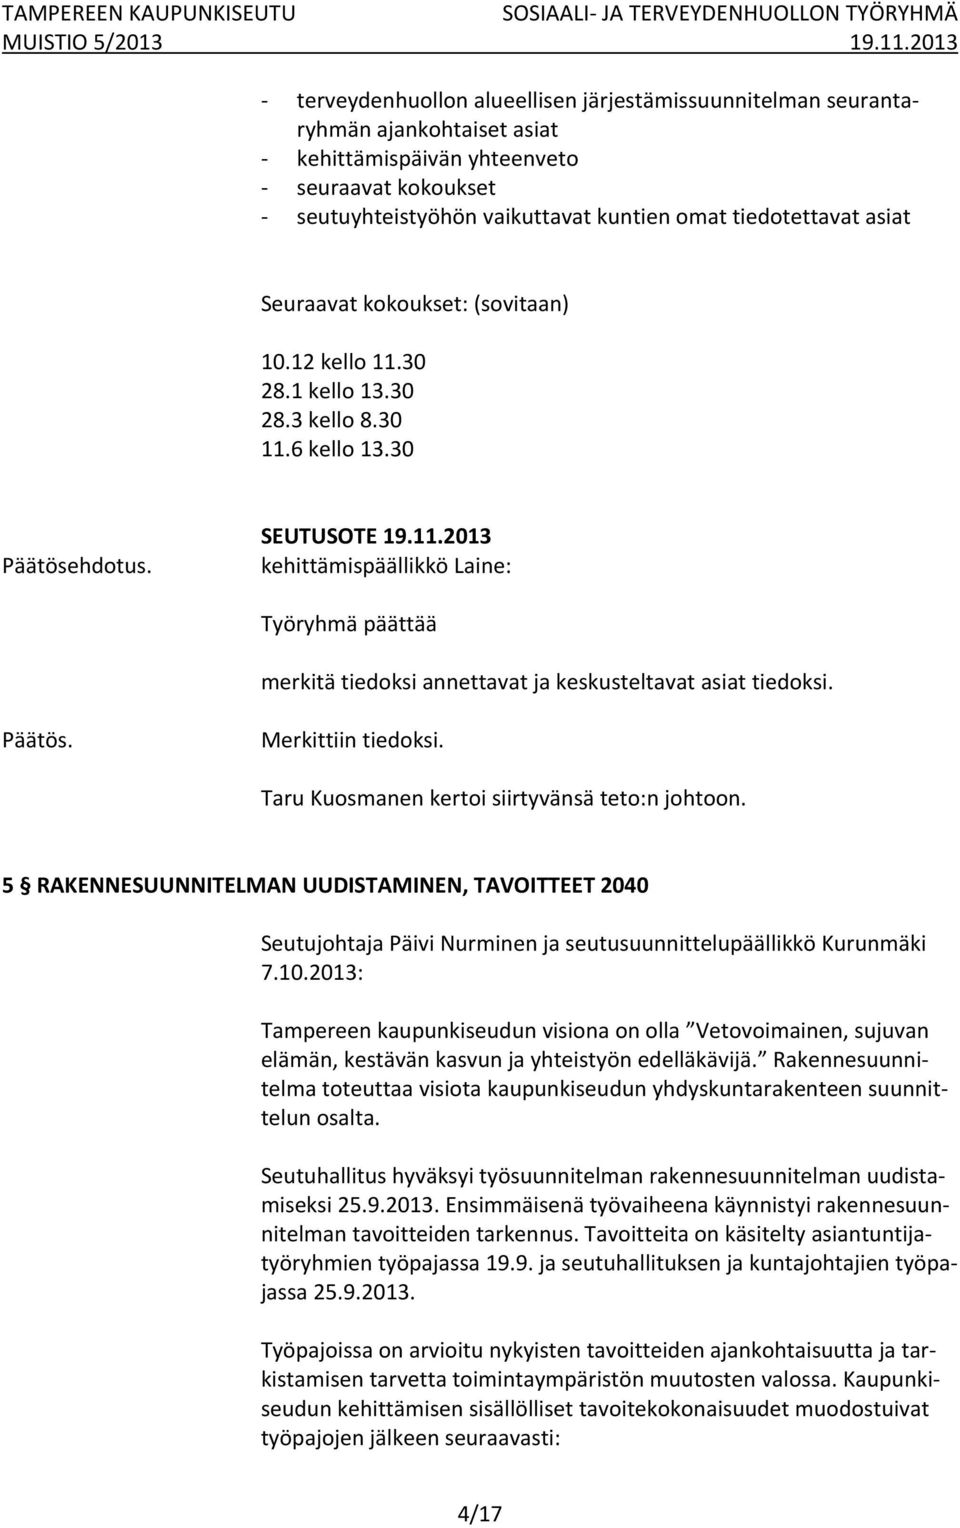 Päätös. Merkittiin tiedoksi. Taru Kuosmanen kertoi siirtyvänsä teto:n johtoon. 5 RAKENNESUUNNITELMAN UUDISTAMINEN, TAVOITTEET 2040 Seutujohtaja Päivi Nurminen ja seutusuunnittelupäällikkö Kurunmäki 7.